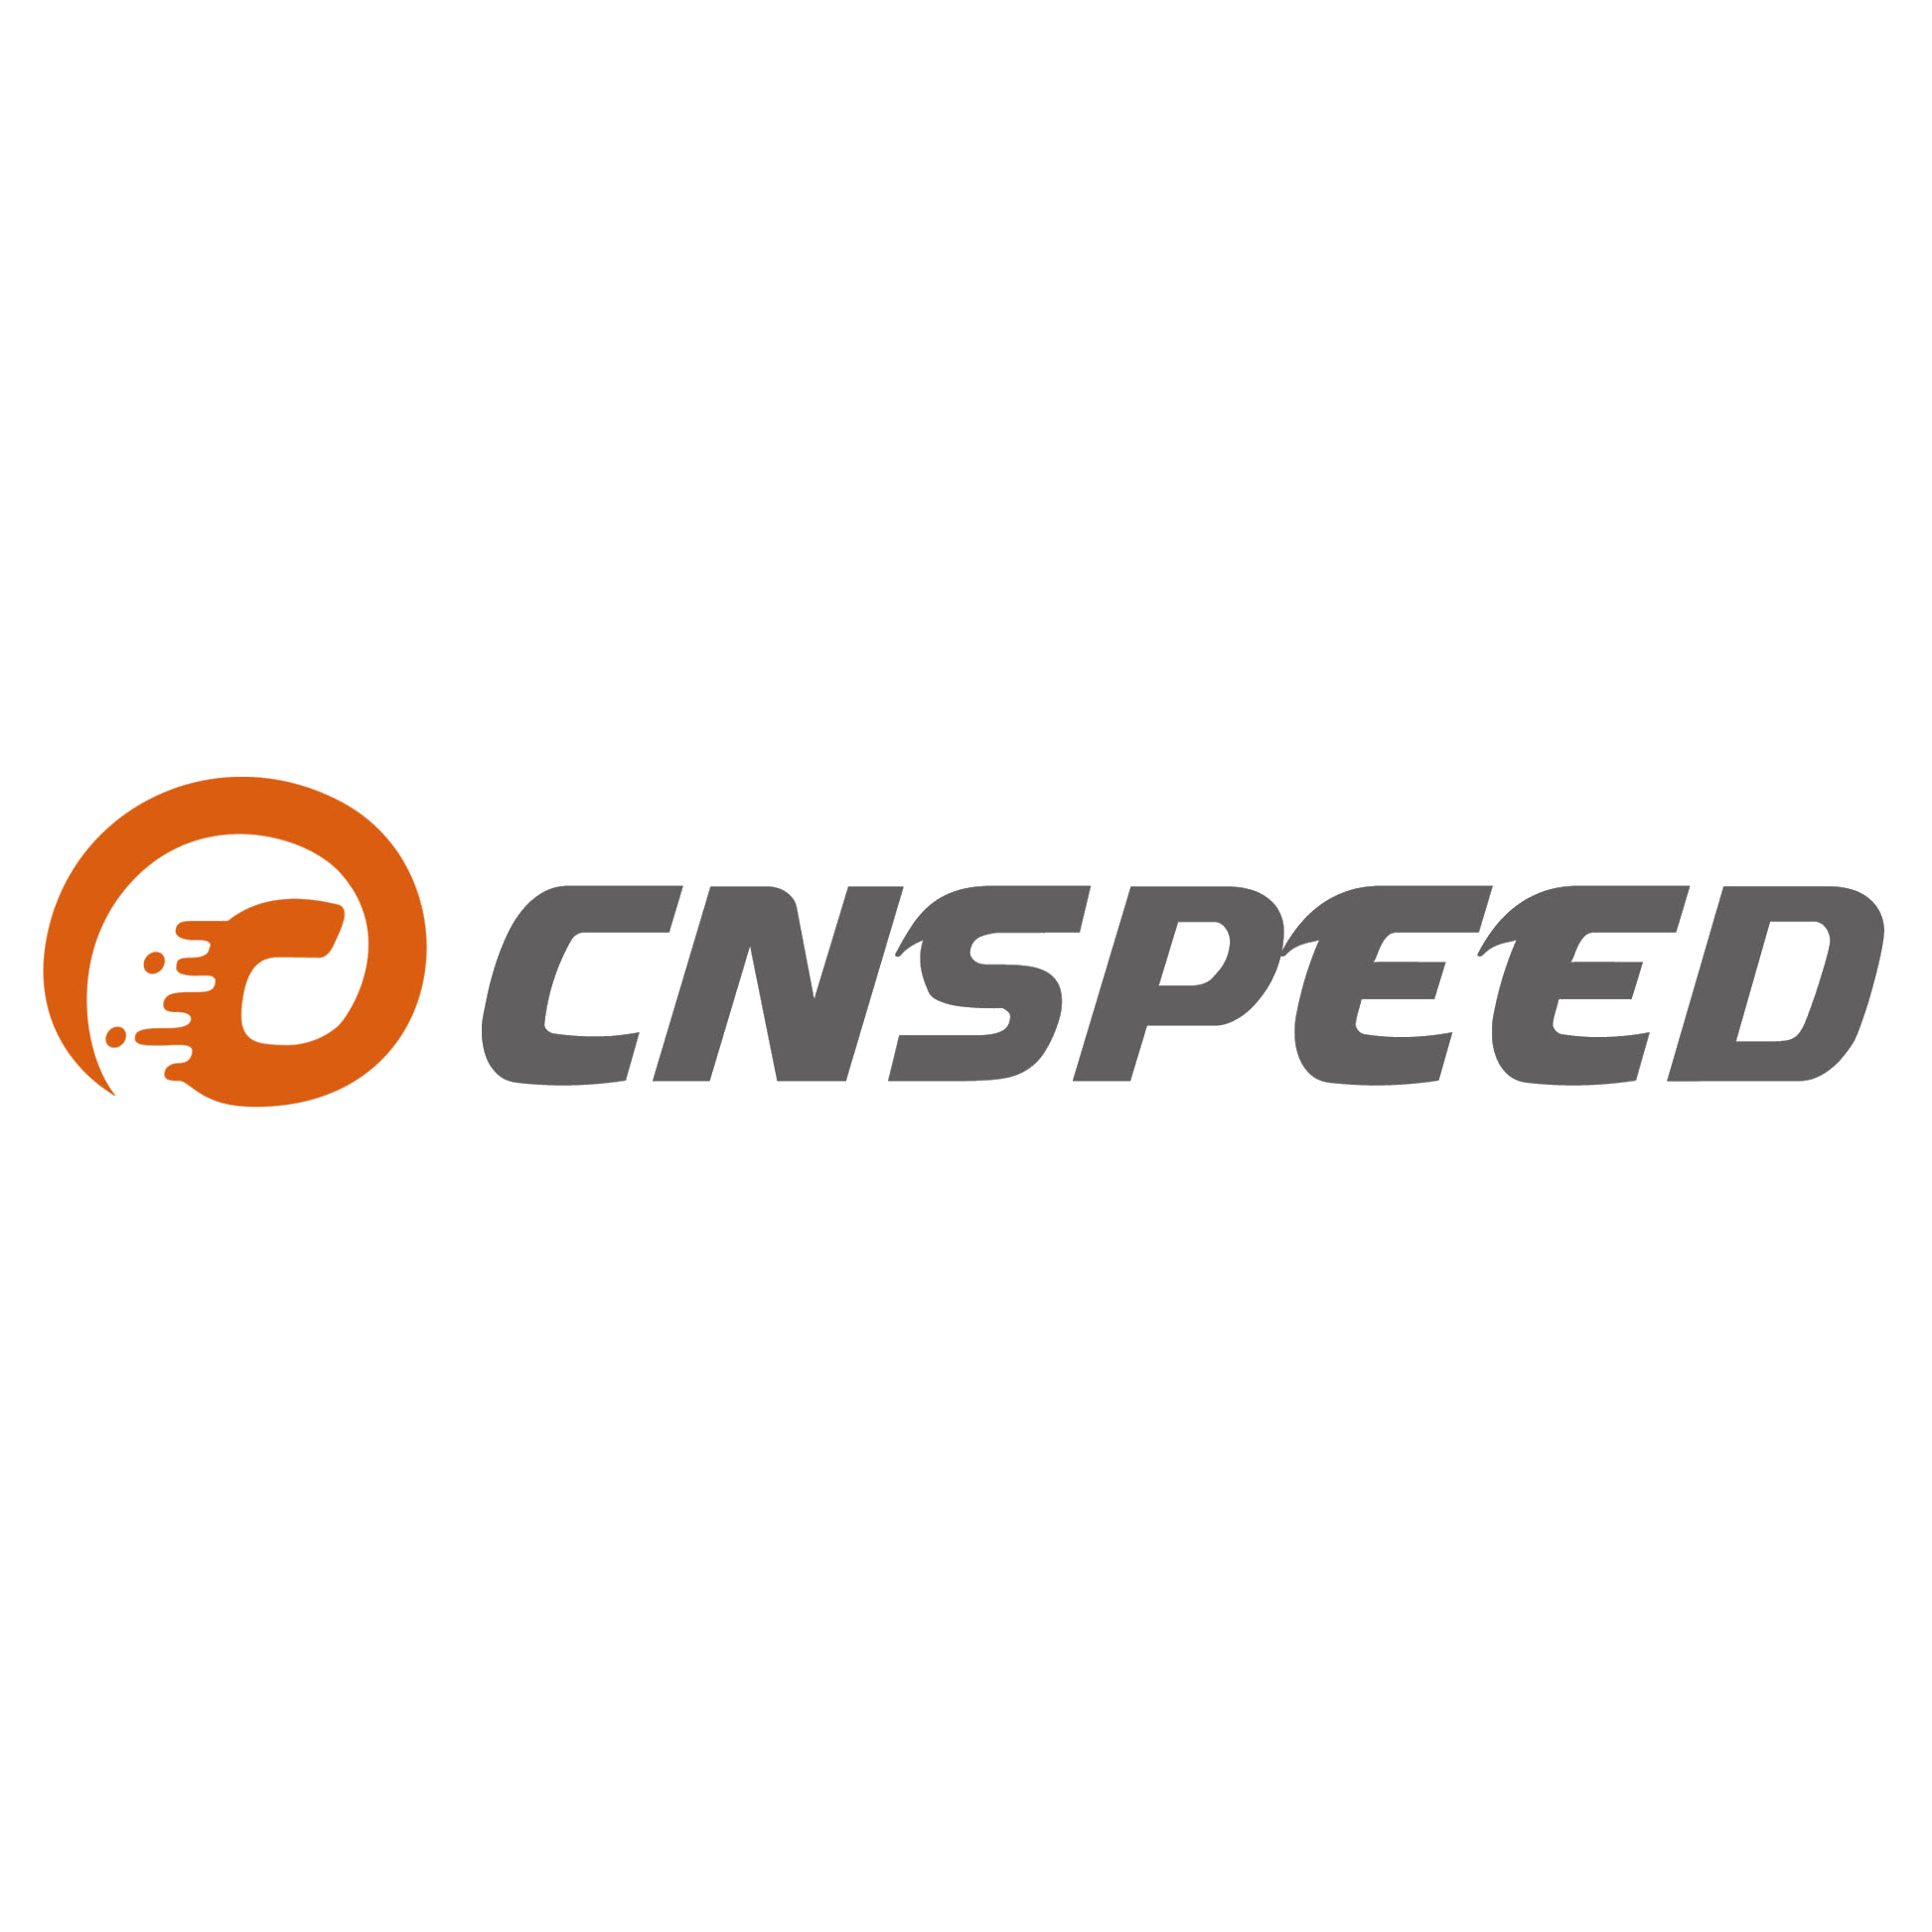 CNSPEED